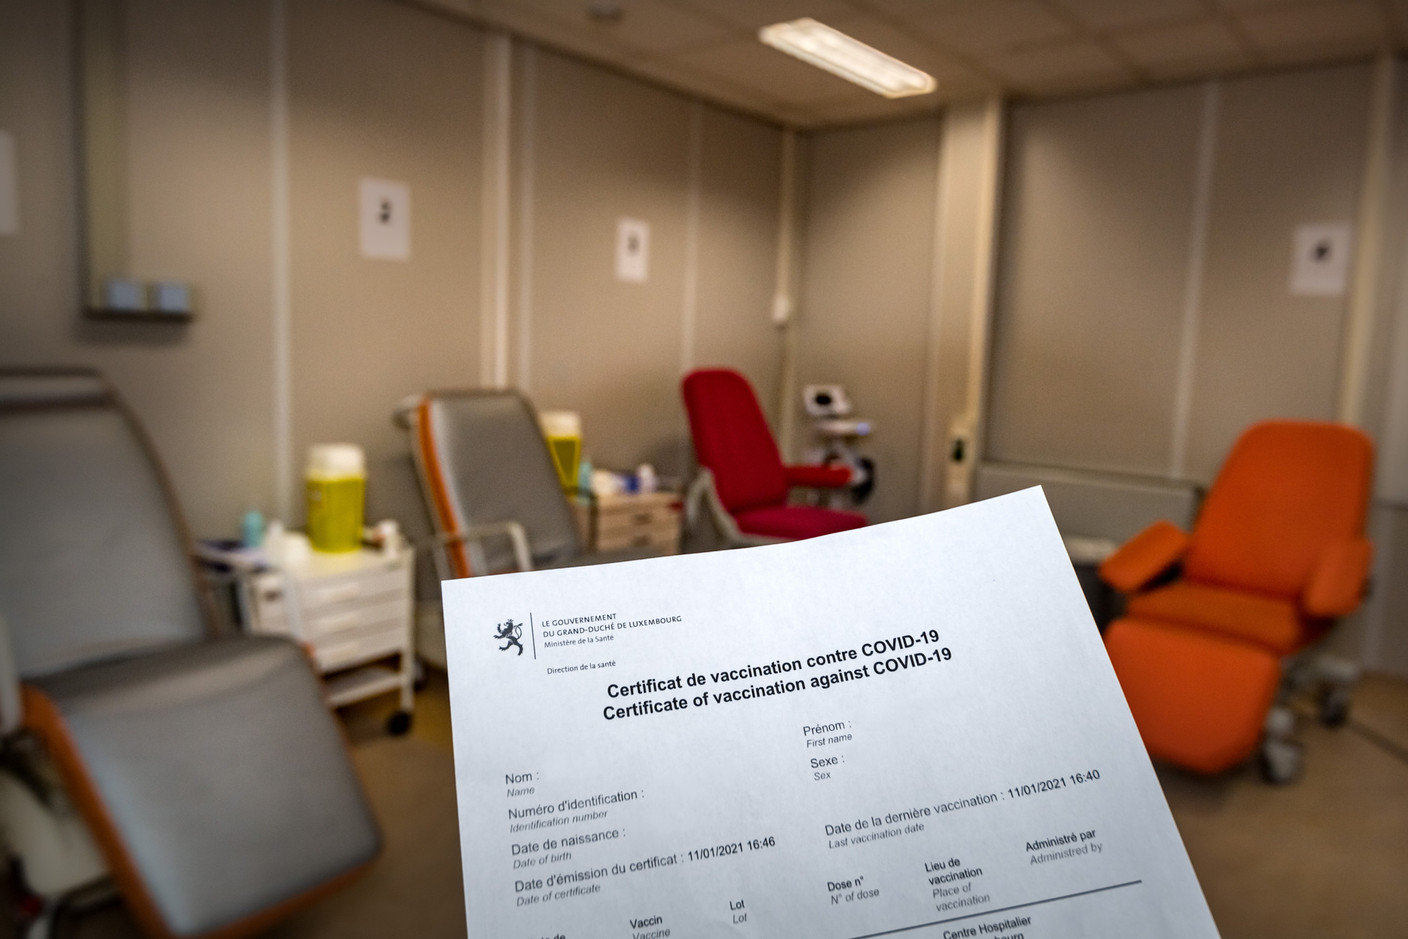 À la fin, le patient reçoit un certificat de vaccination. (Photo: Nader Ghavami/Maison Moderne)